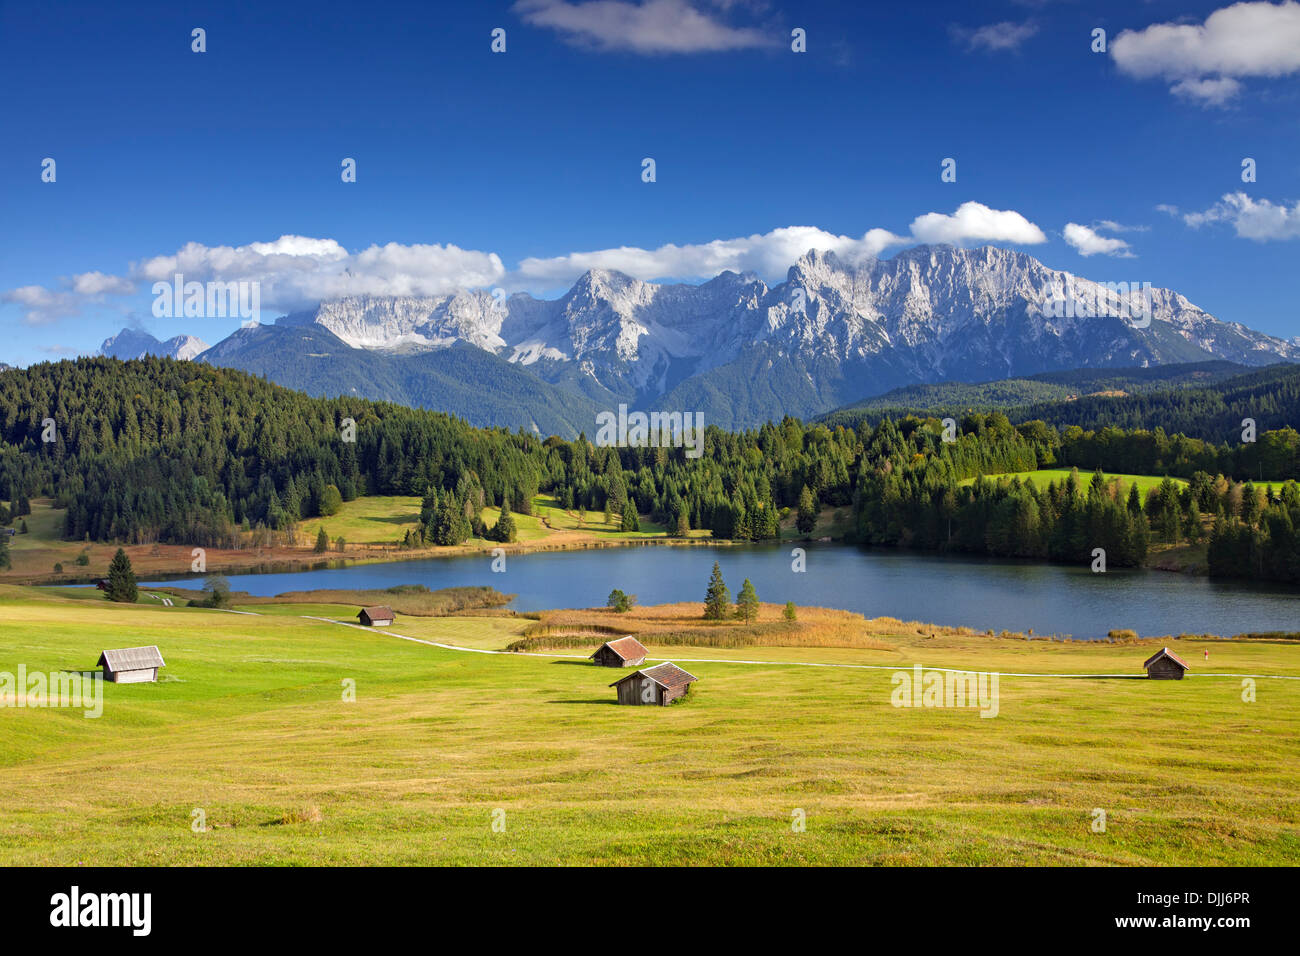 Le Karwendel et abris le long du lac Gerold / Geroldsee près de Mittenwald, Haute-Bavière, Allemagne Banque D'Images